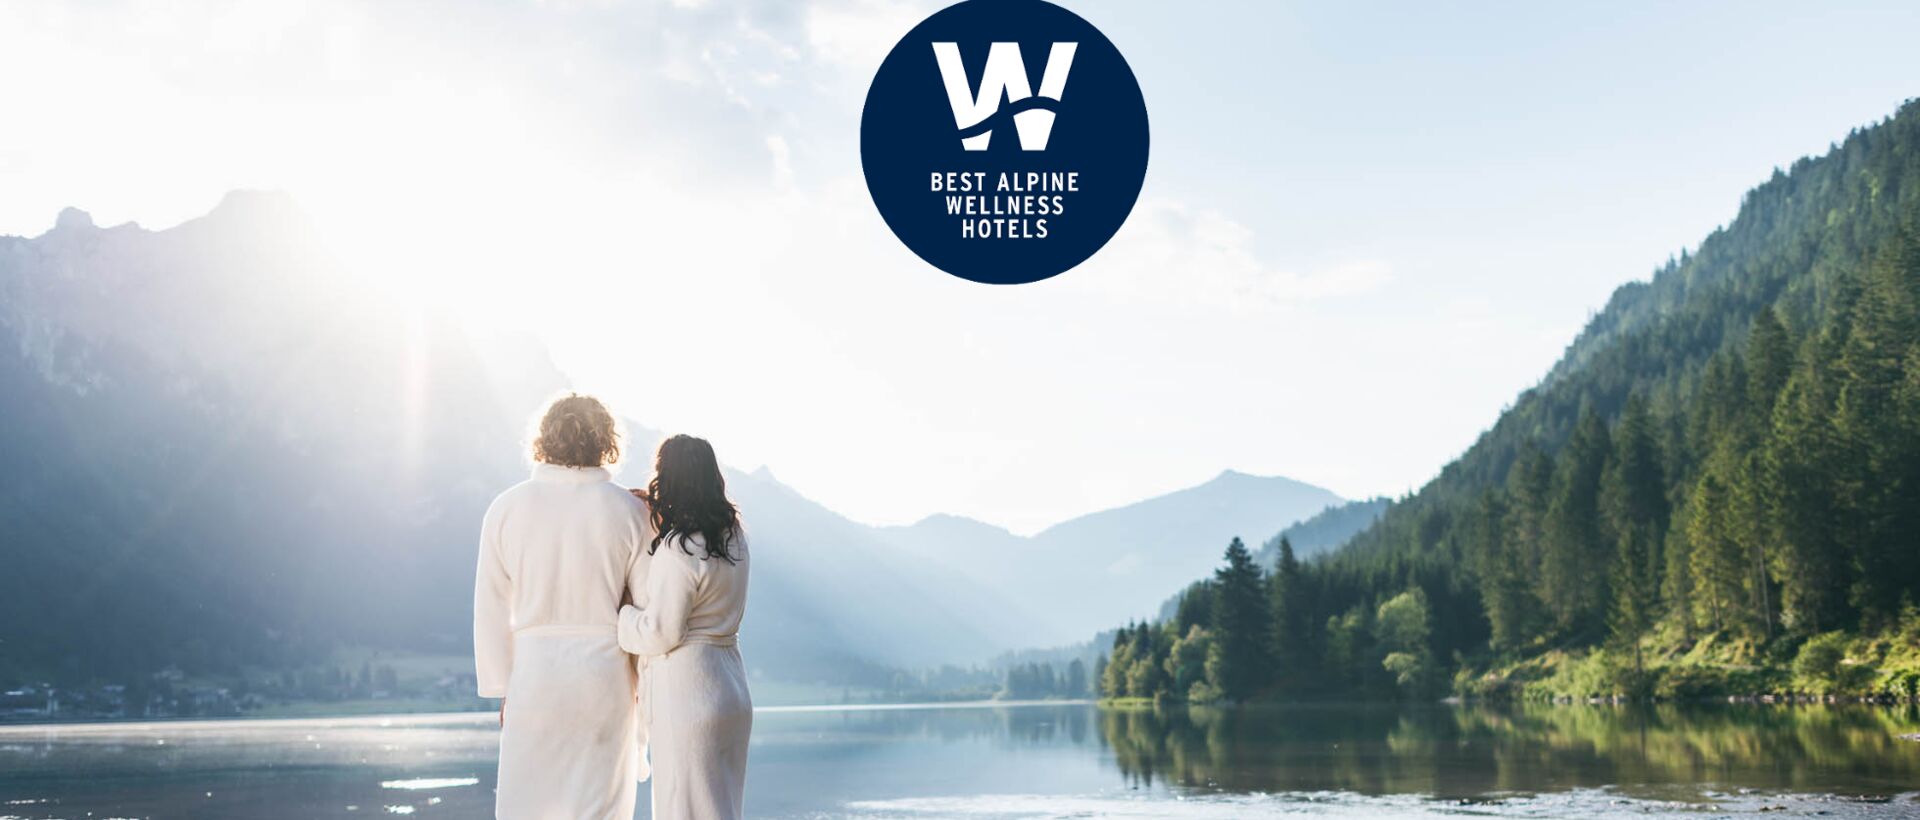 Wellnessurlaub in den schönsten Wellnesshotels der Alpen | Best Alpine Wellness Hotels